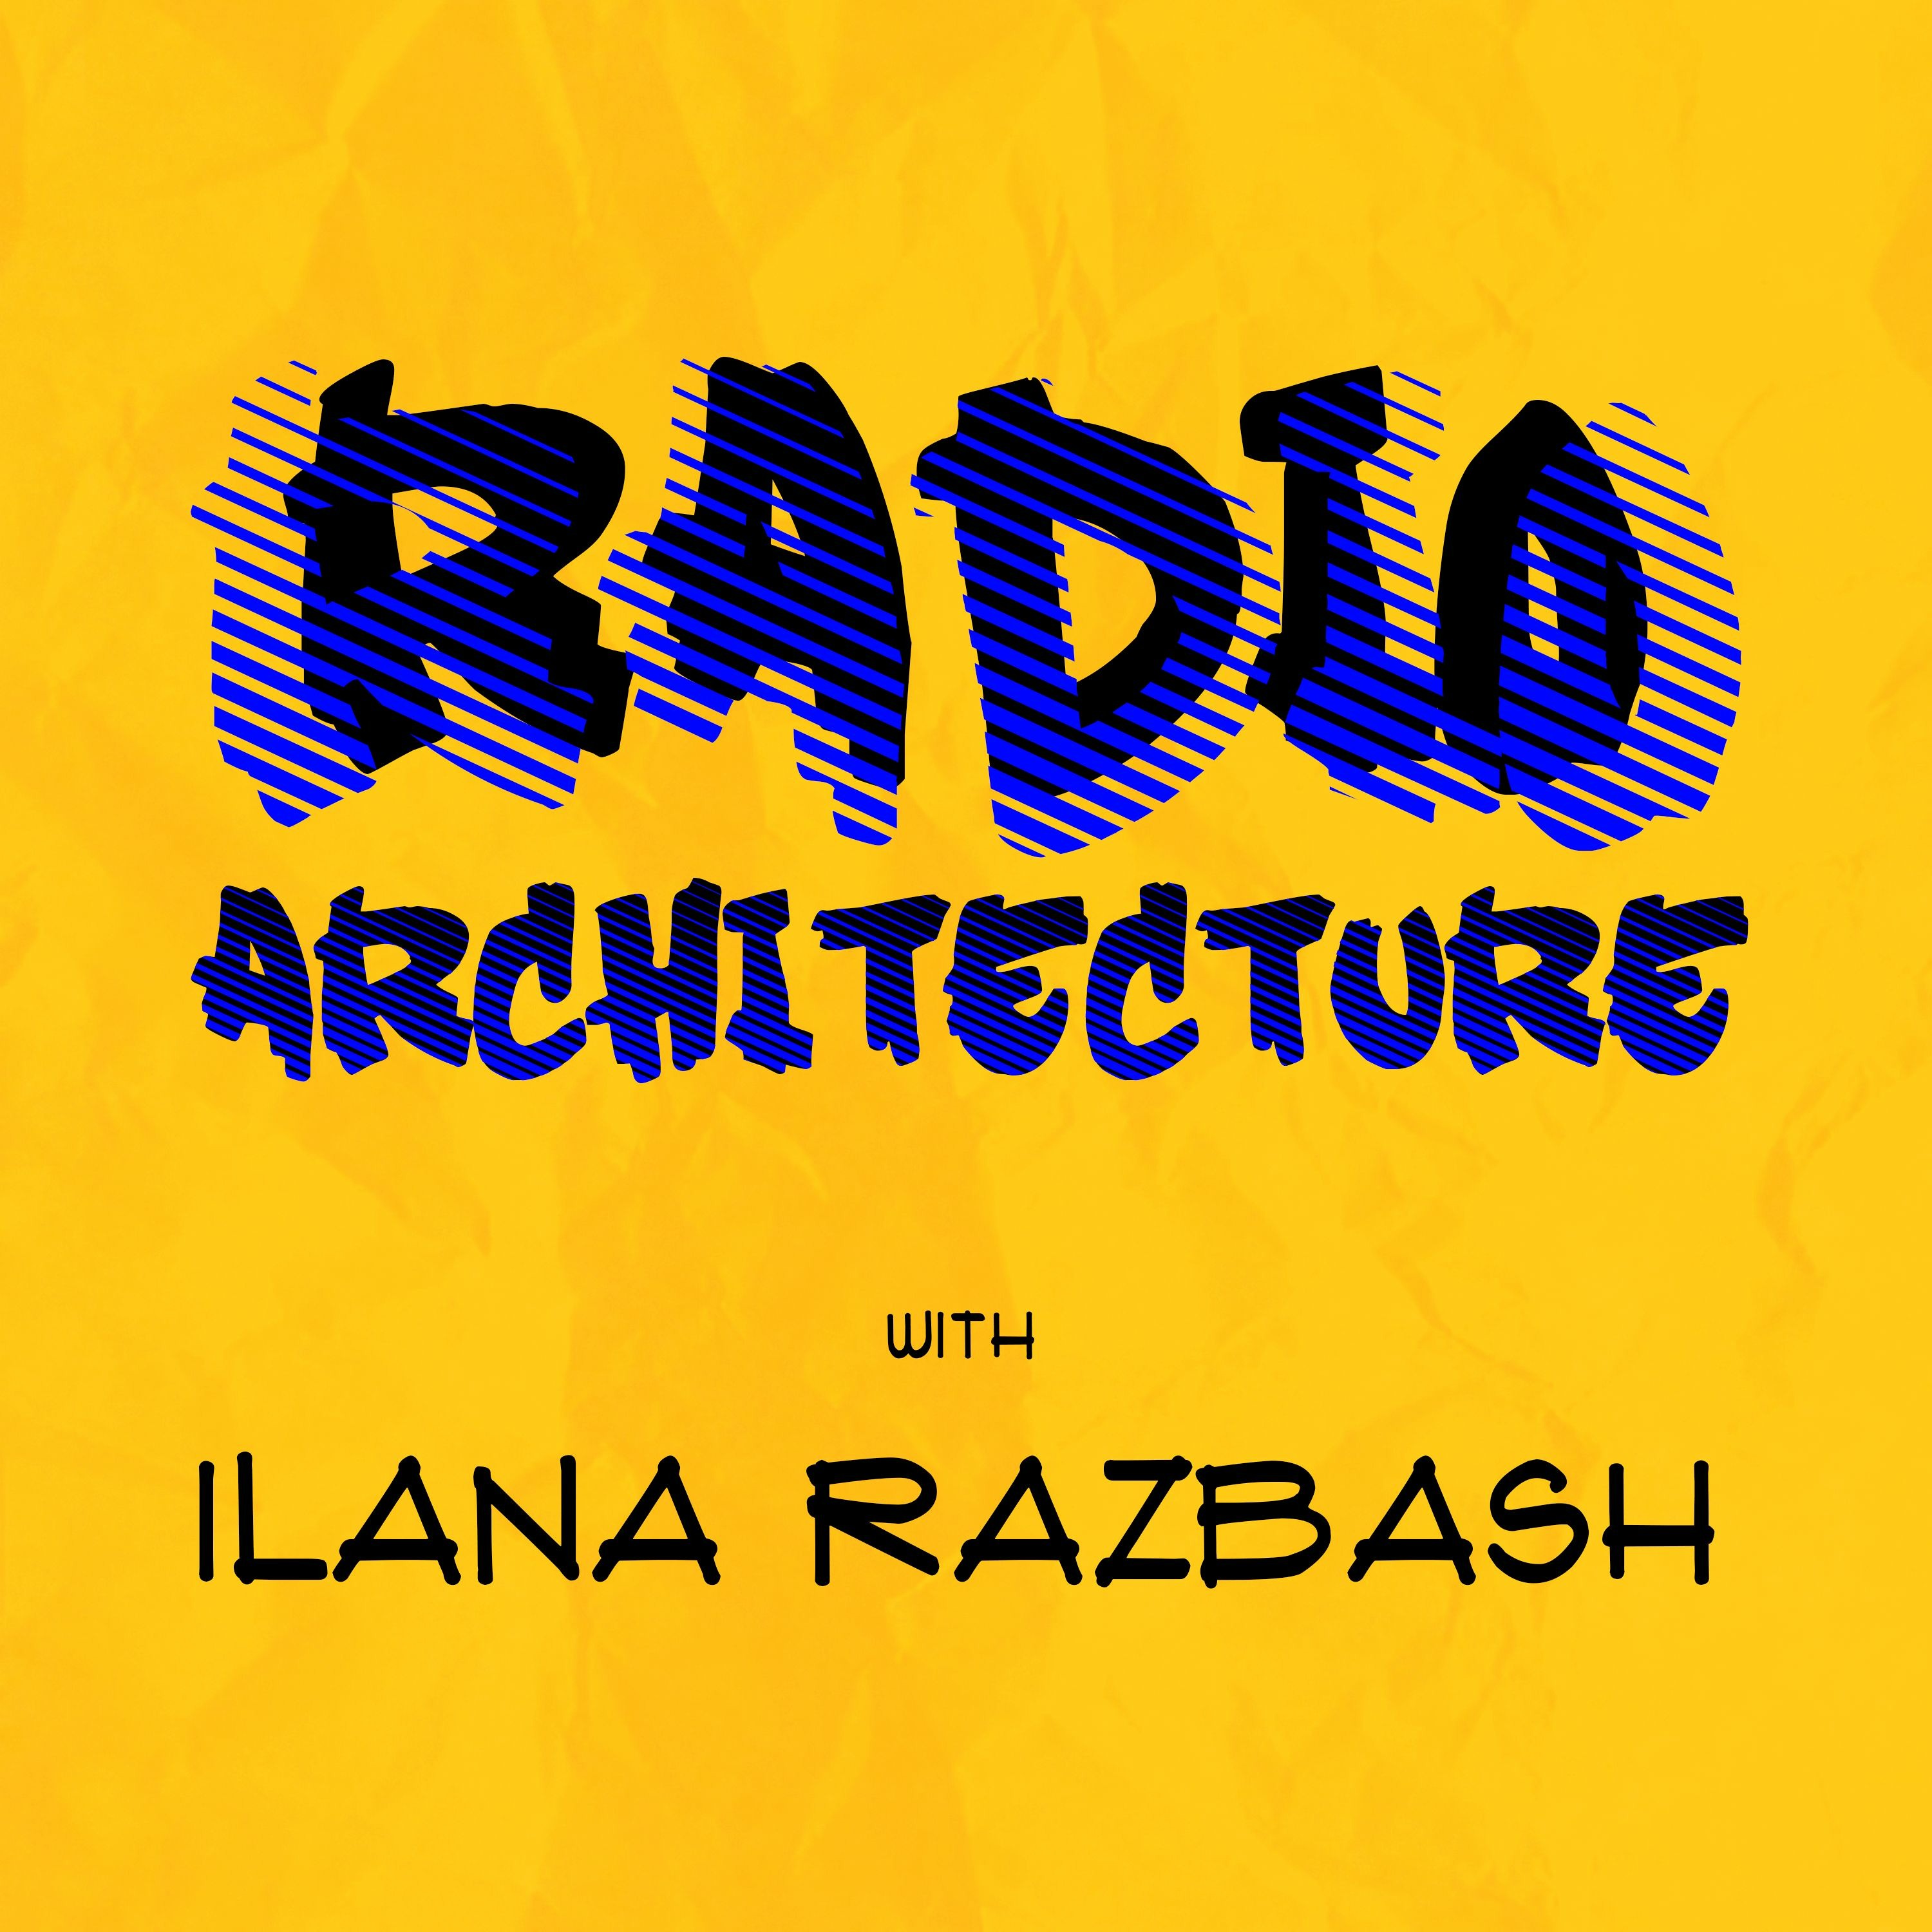 Radio Architecture With Ilana Razbash - Episode 18 (Dr Christine Phillips)